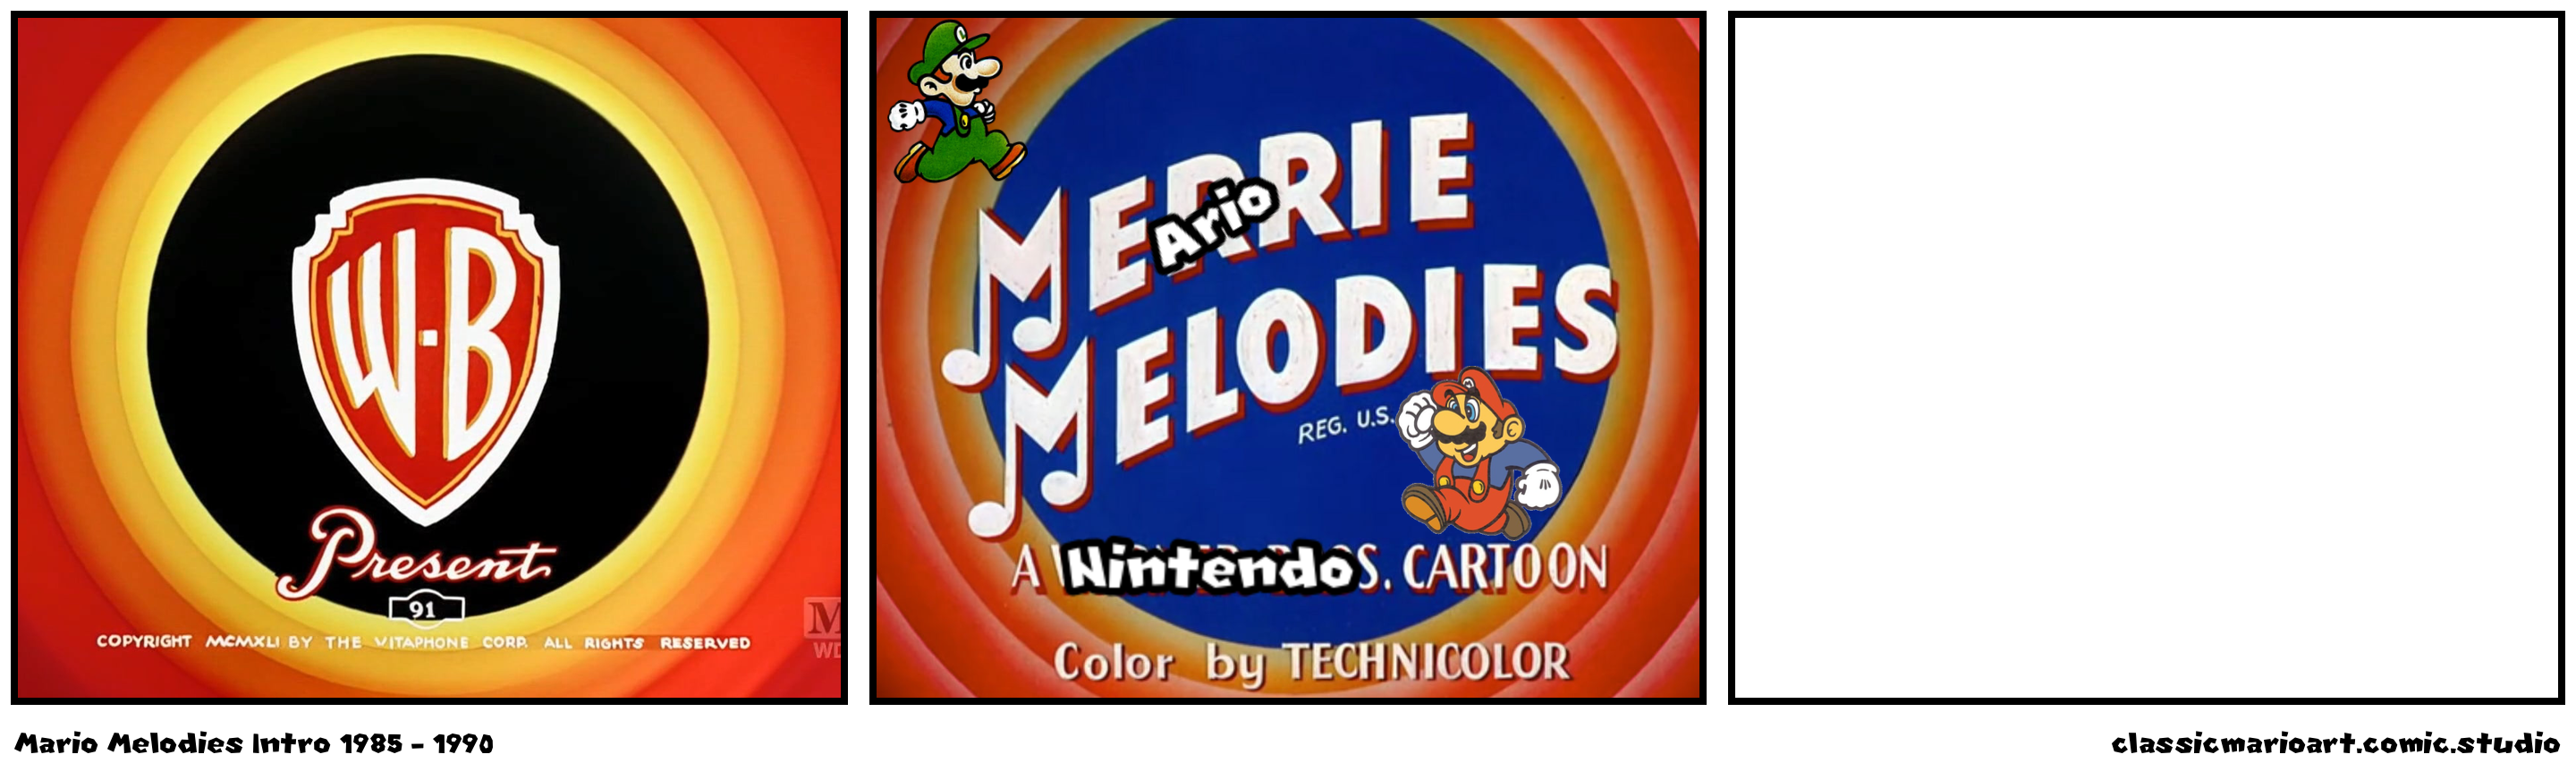 Mario Melodies Intro 1985 - 1990 